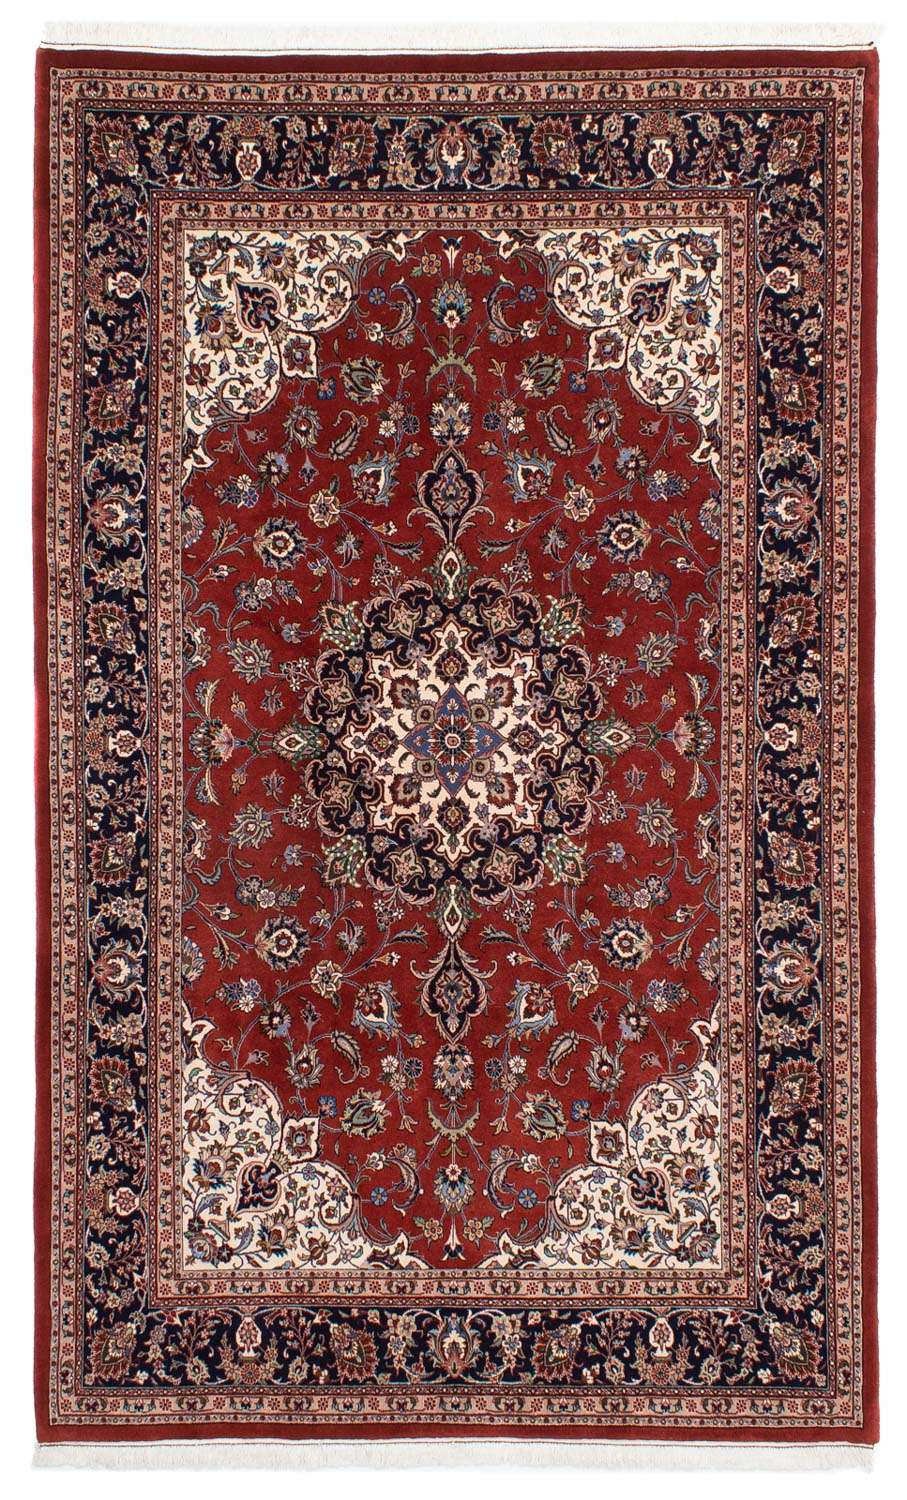 Dywan perski - Klasyczny - 296 x 198 cm - czerwony